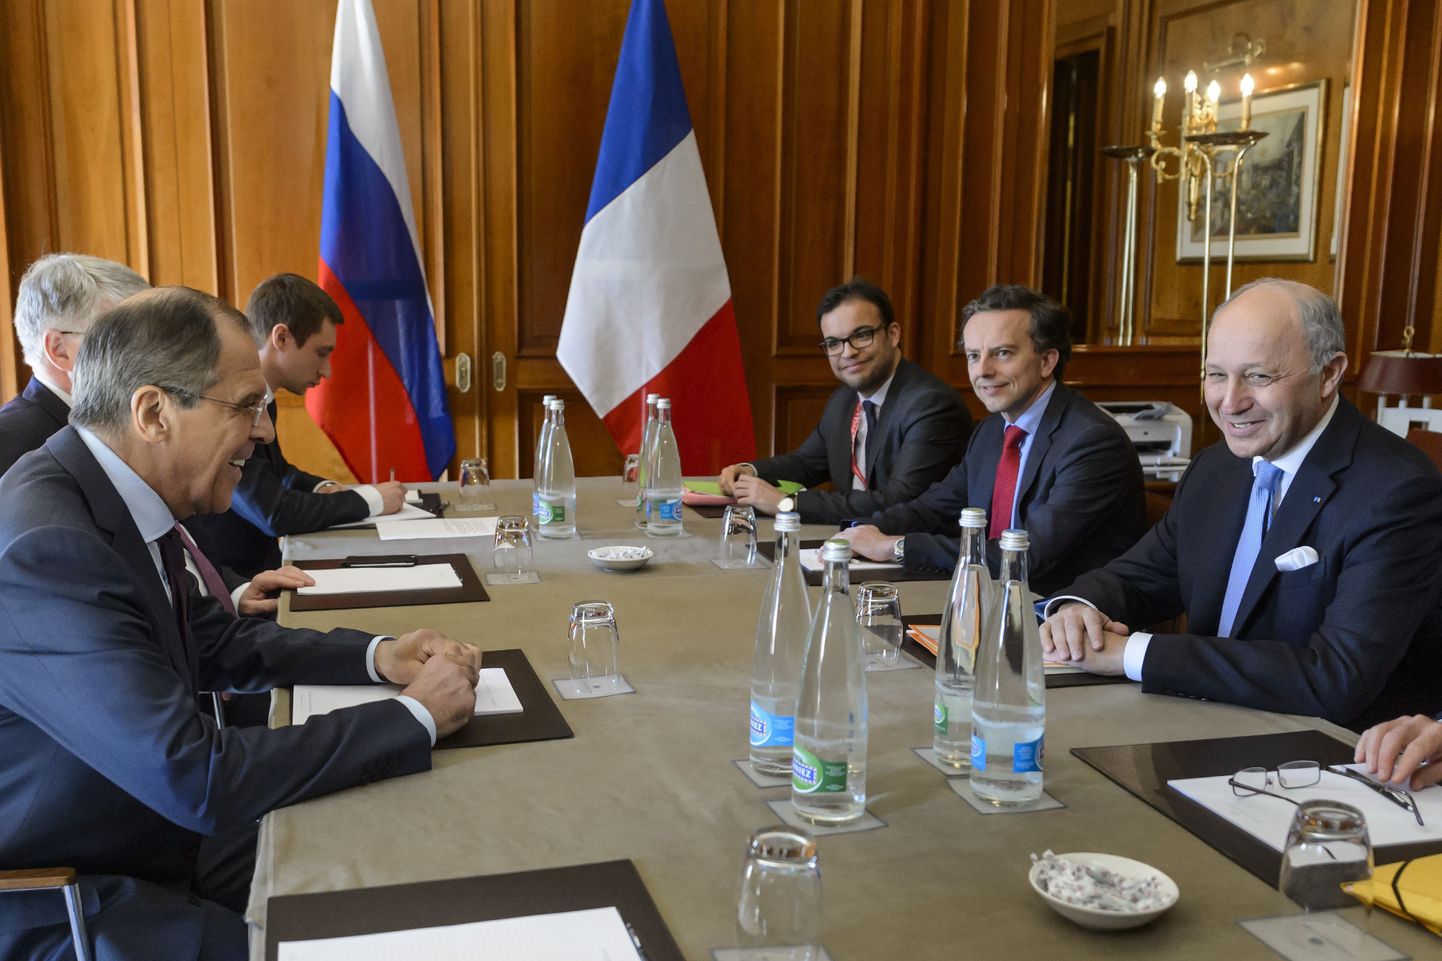 Prantsuse välisminister Laurent Fabius (paremal) kohtus koos oma delegatsiooniga tuumakõnelustel ka Venemaa ametivenna Sergei Lavroviga (vasakul).